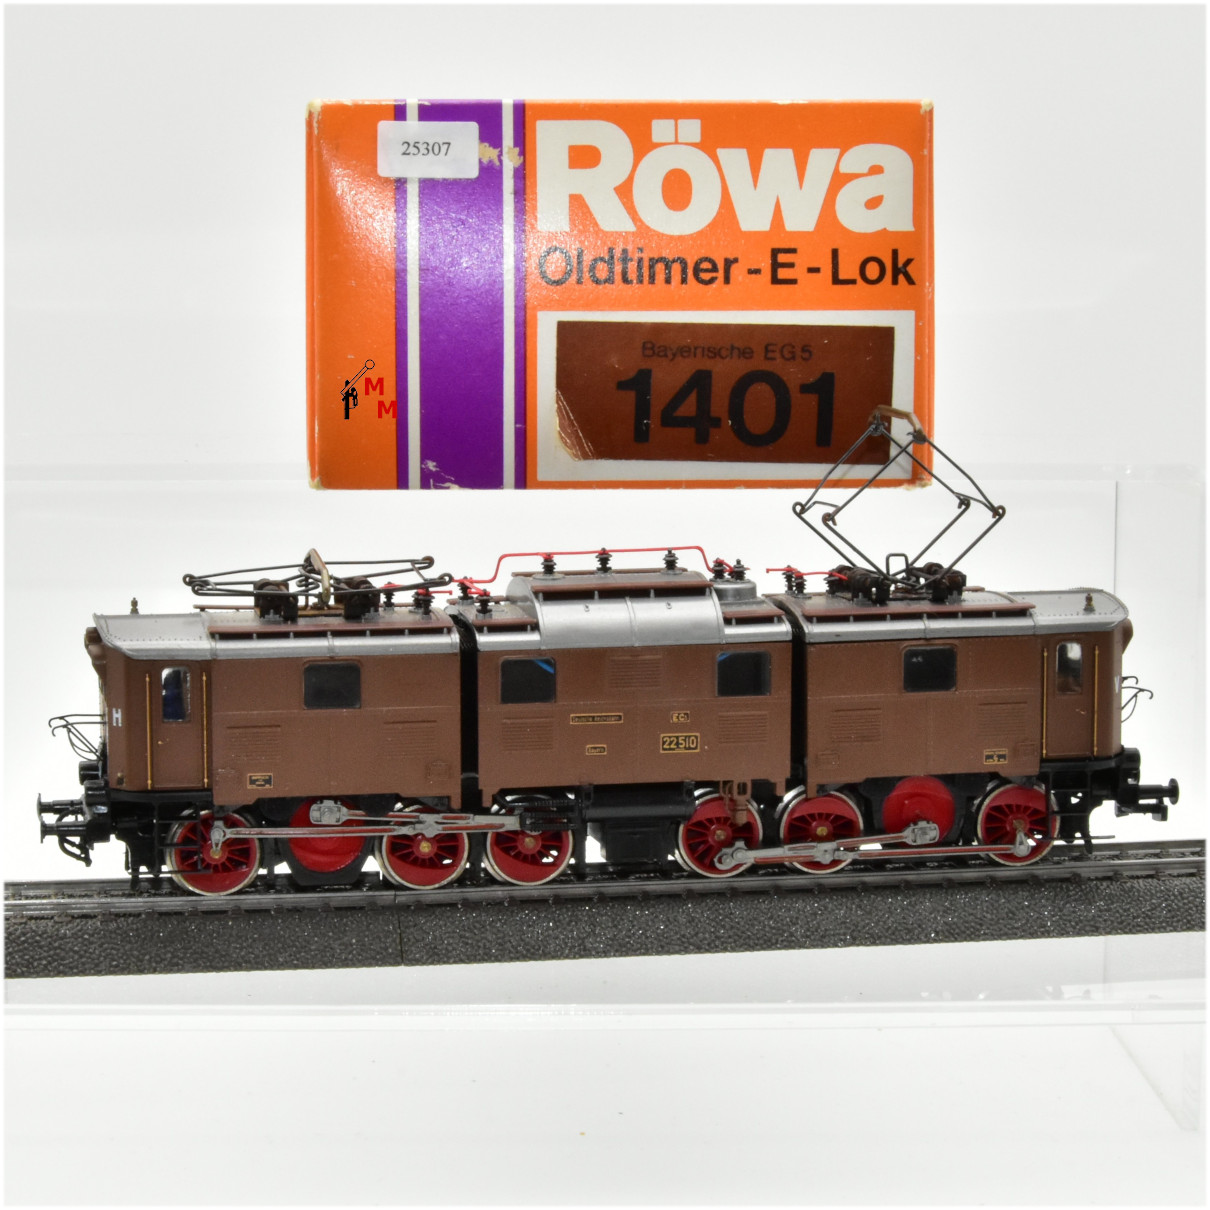 Röwa 1401 Oldtimer E-Lok Baureihe EG 5 der Deutschen Reichsbahn, (25307)